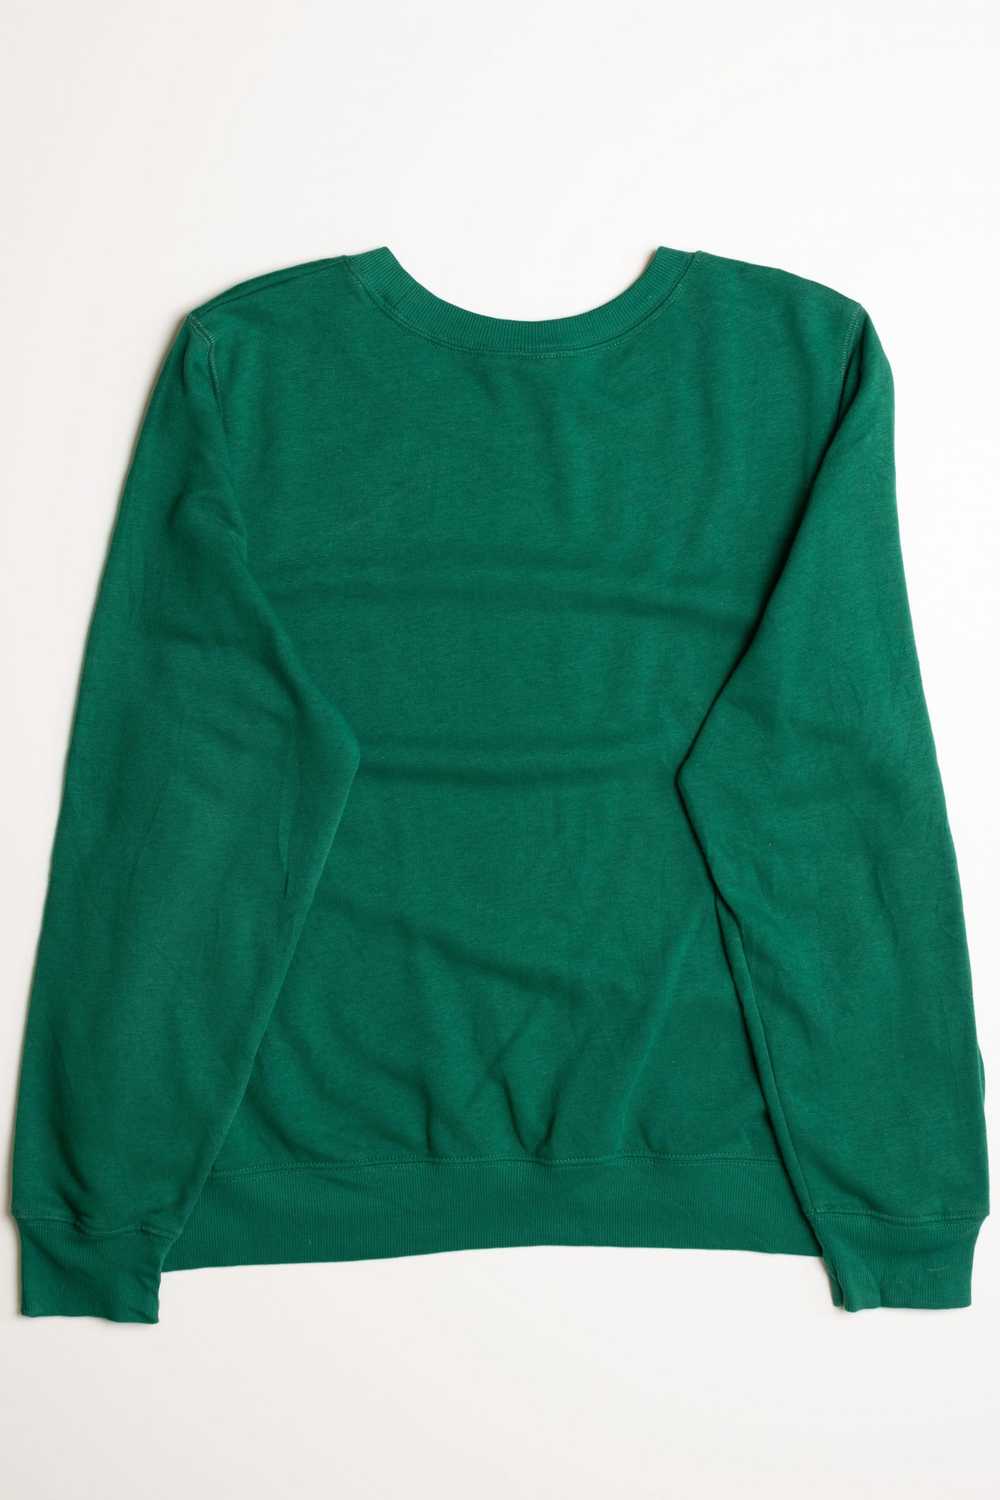 Green Ugly Christmas Sweatshirt 56909 - image 2